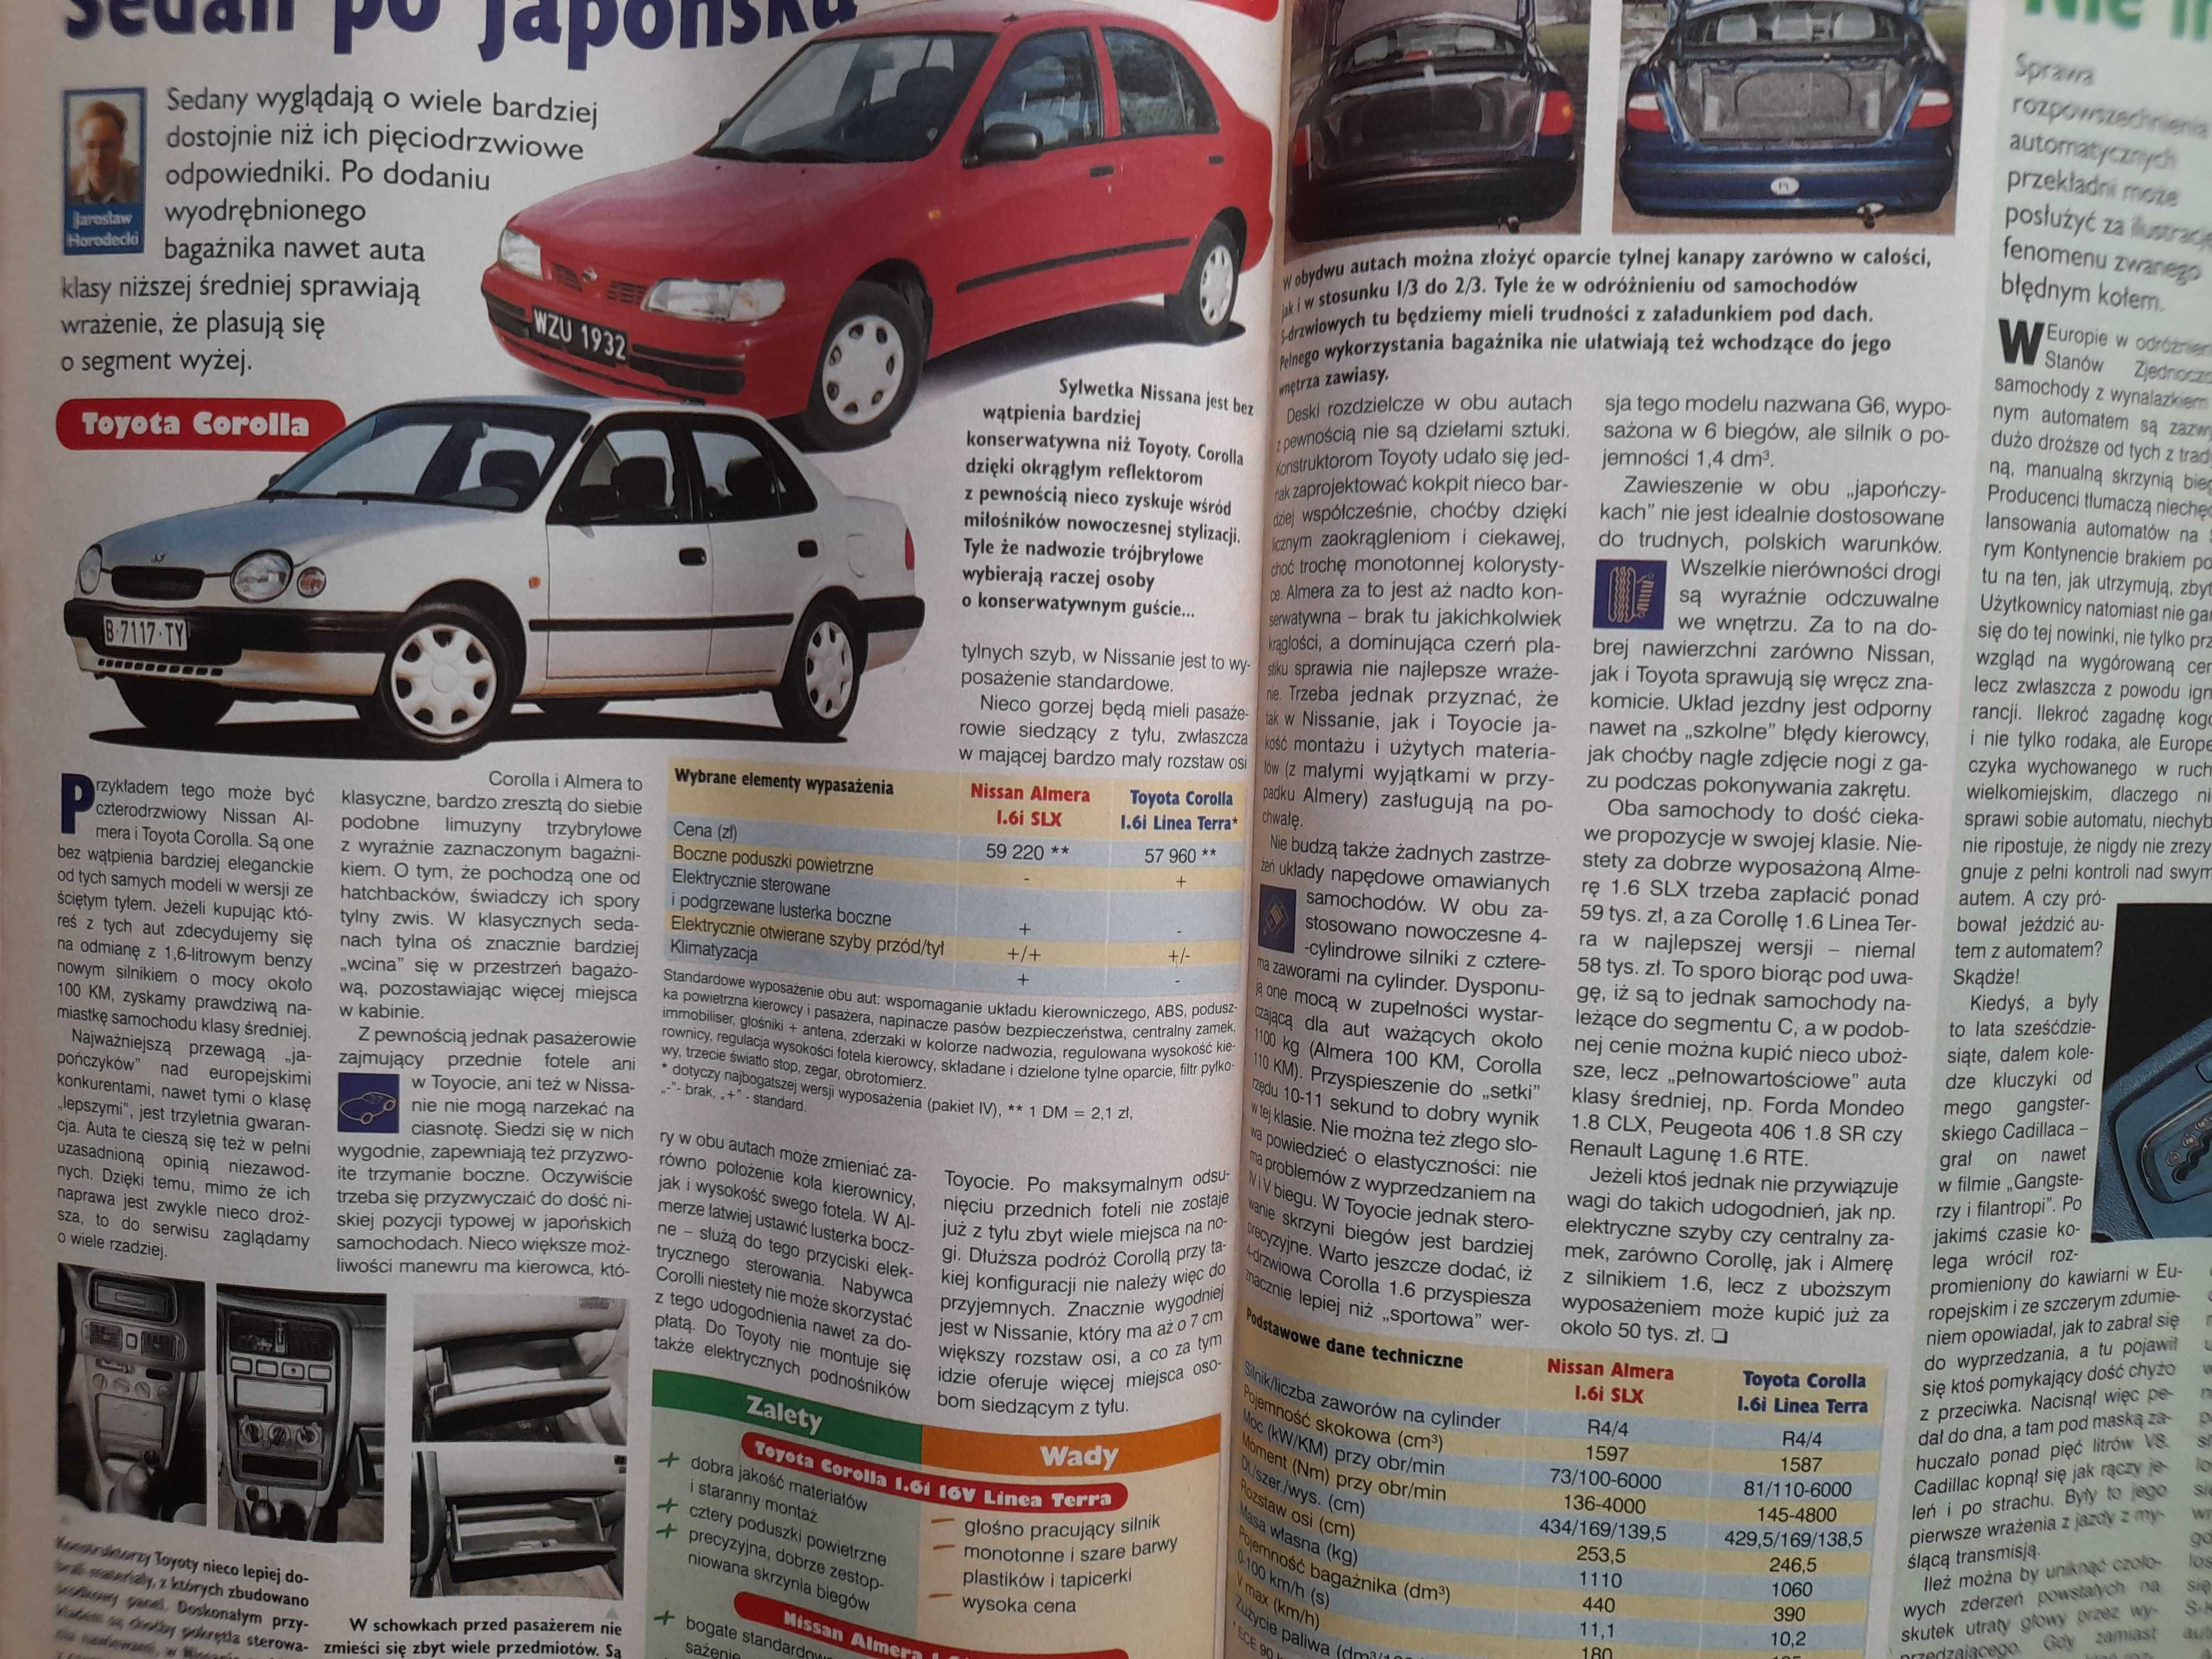 MOTOR Seicento, Alfa 156, BMW 3, Colt, Range Rover, Corolla rok 1999